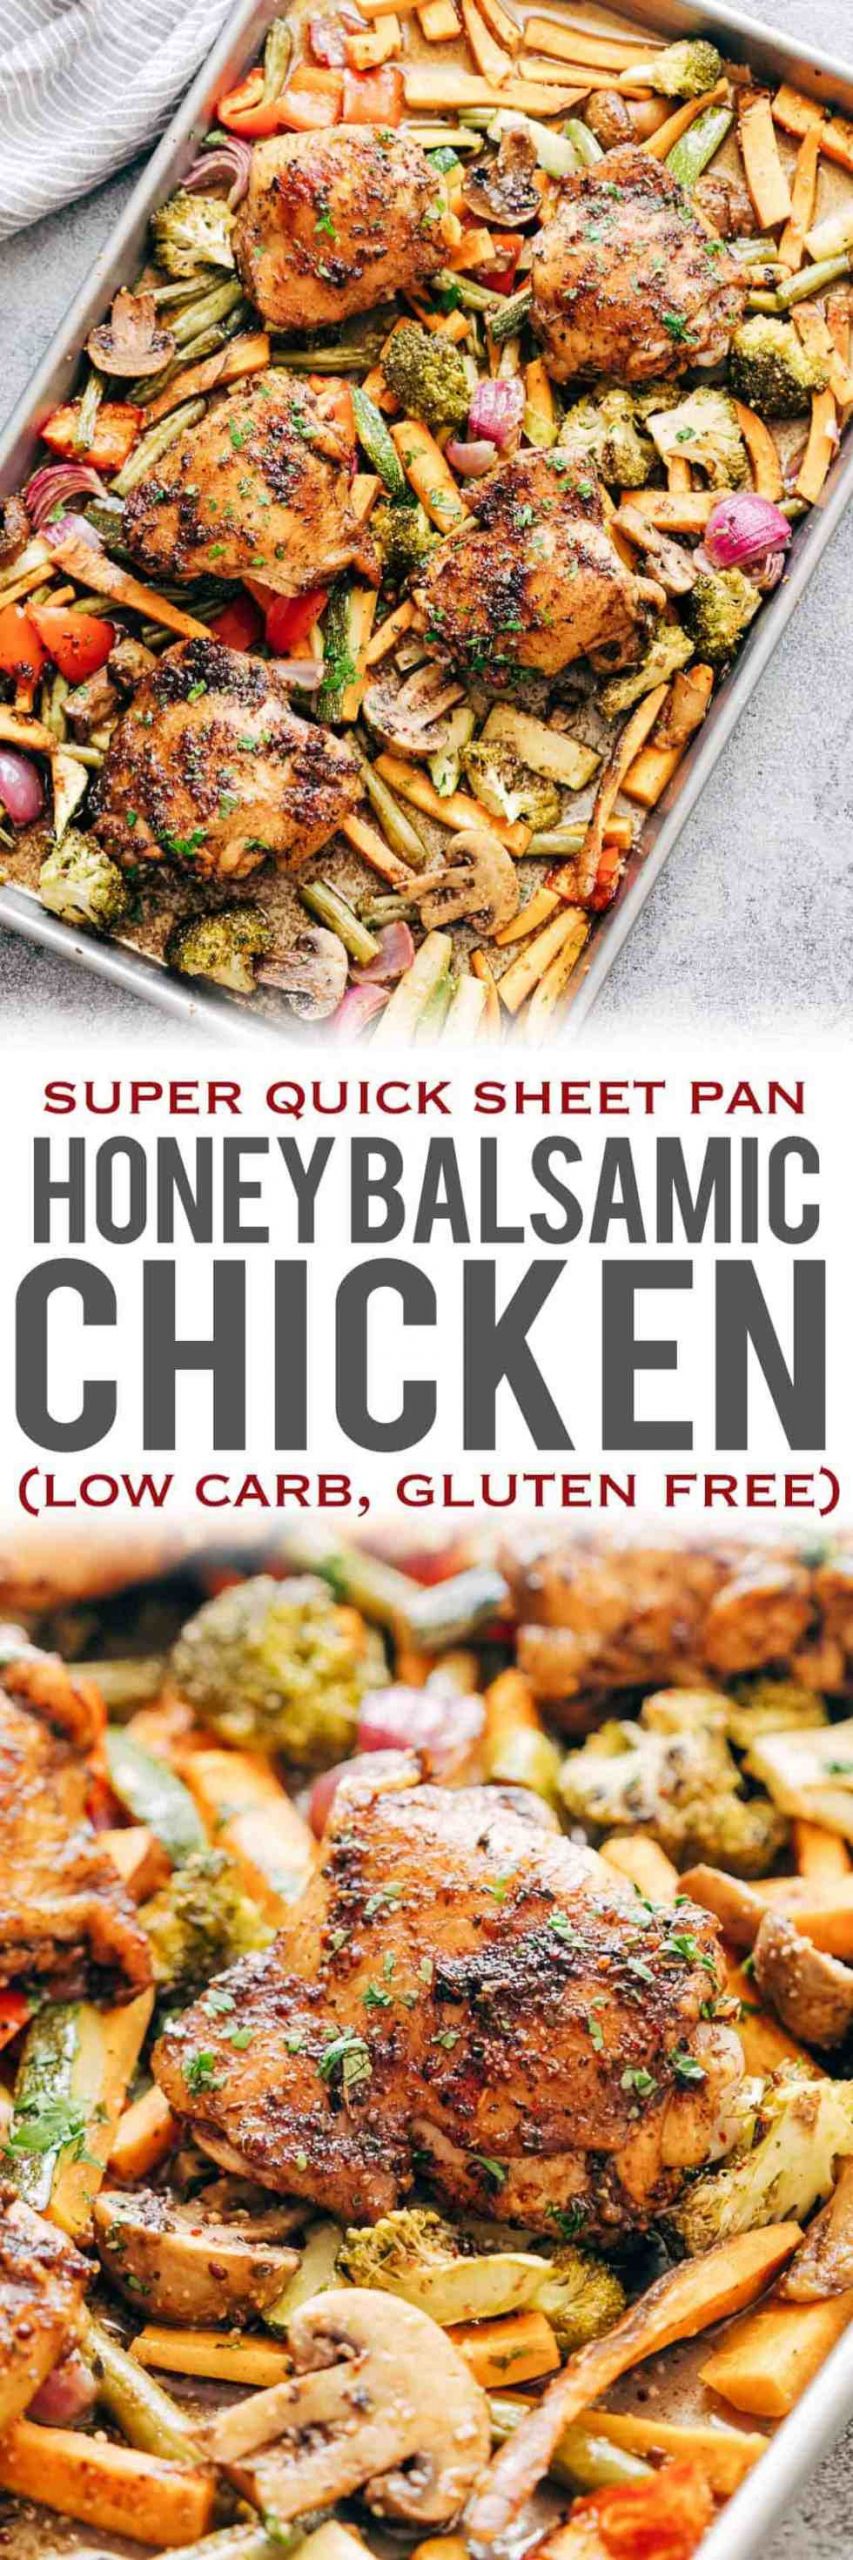 Sheet Pan Chicken Thighs And Veggies
 Sheet Pan Honey Balsamic Chicken Thighs with Veggies